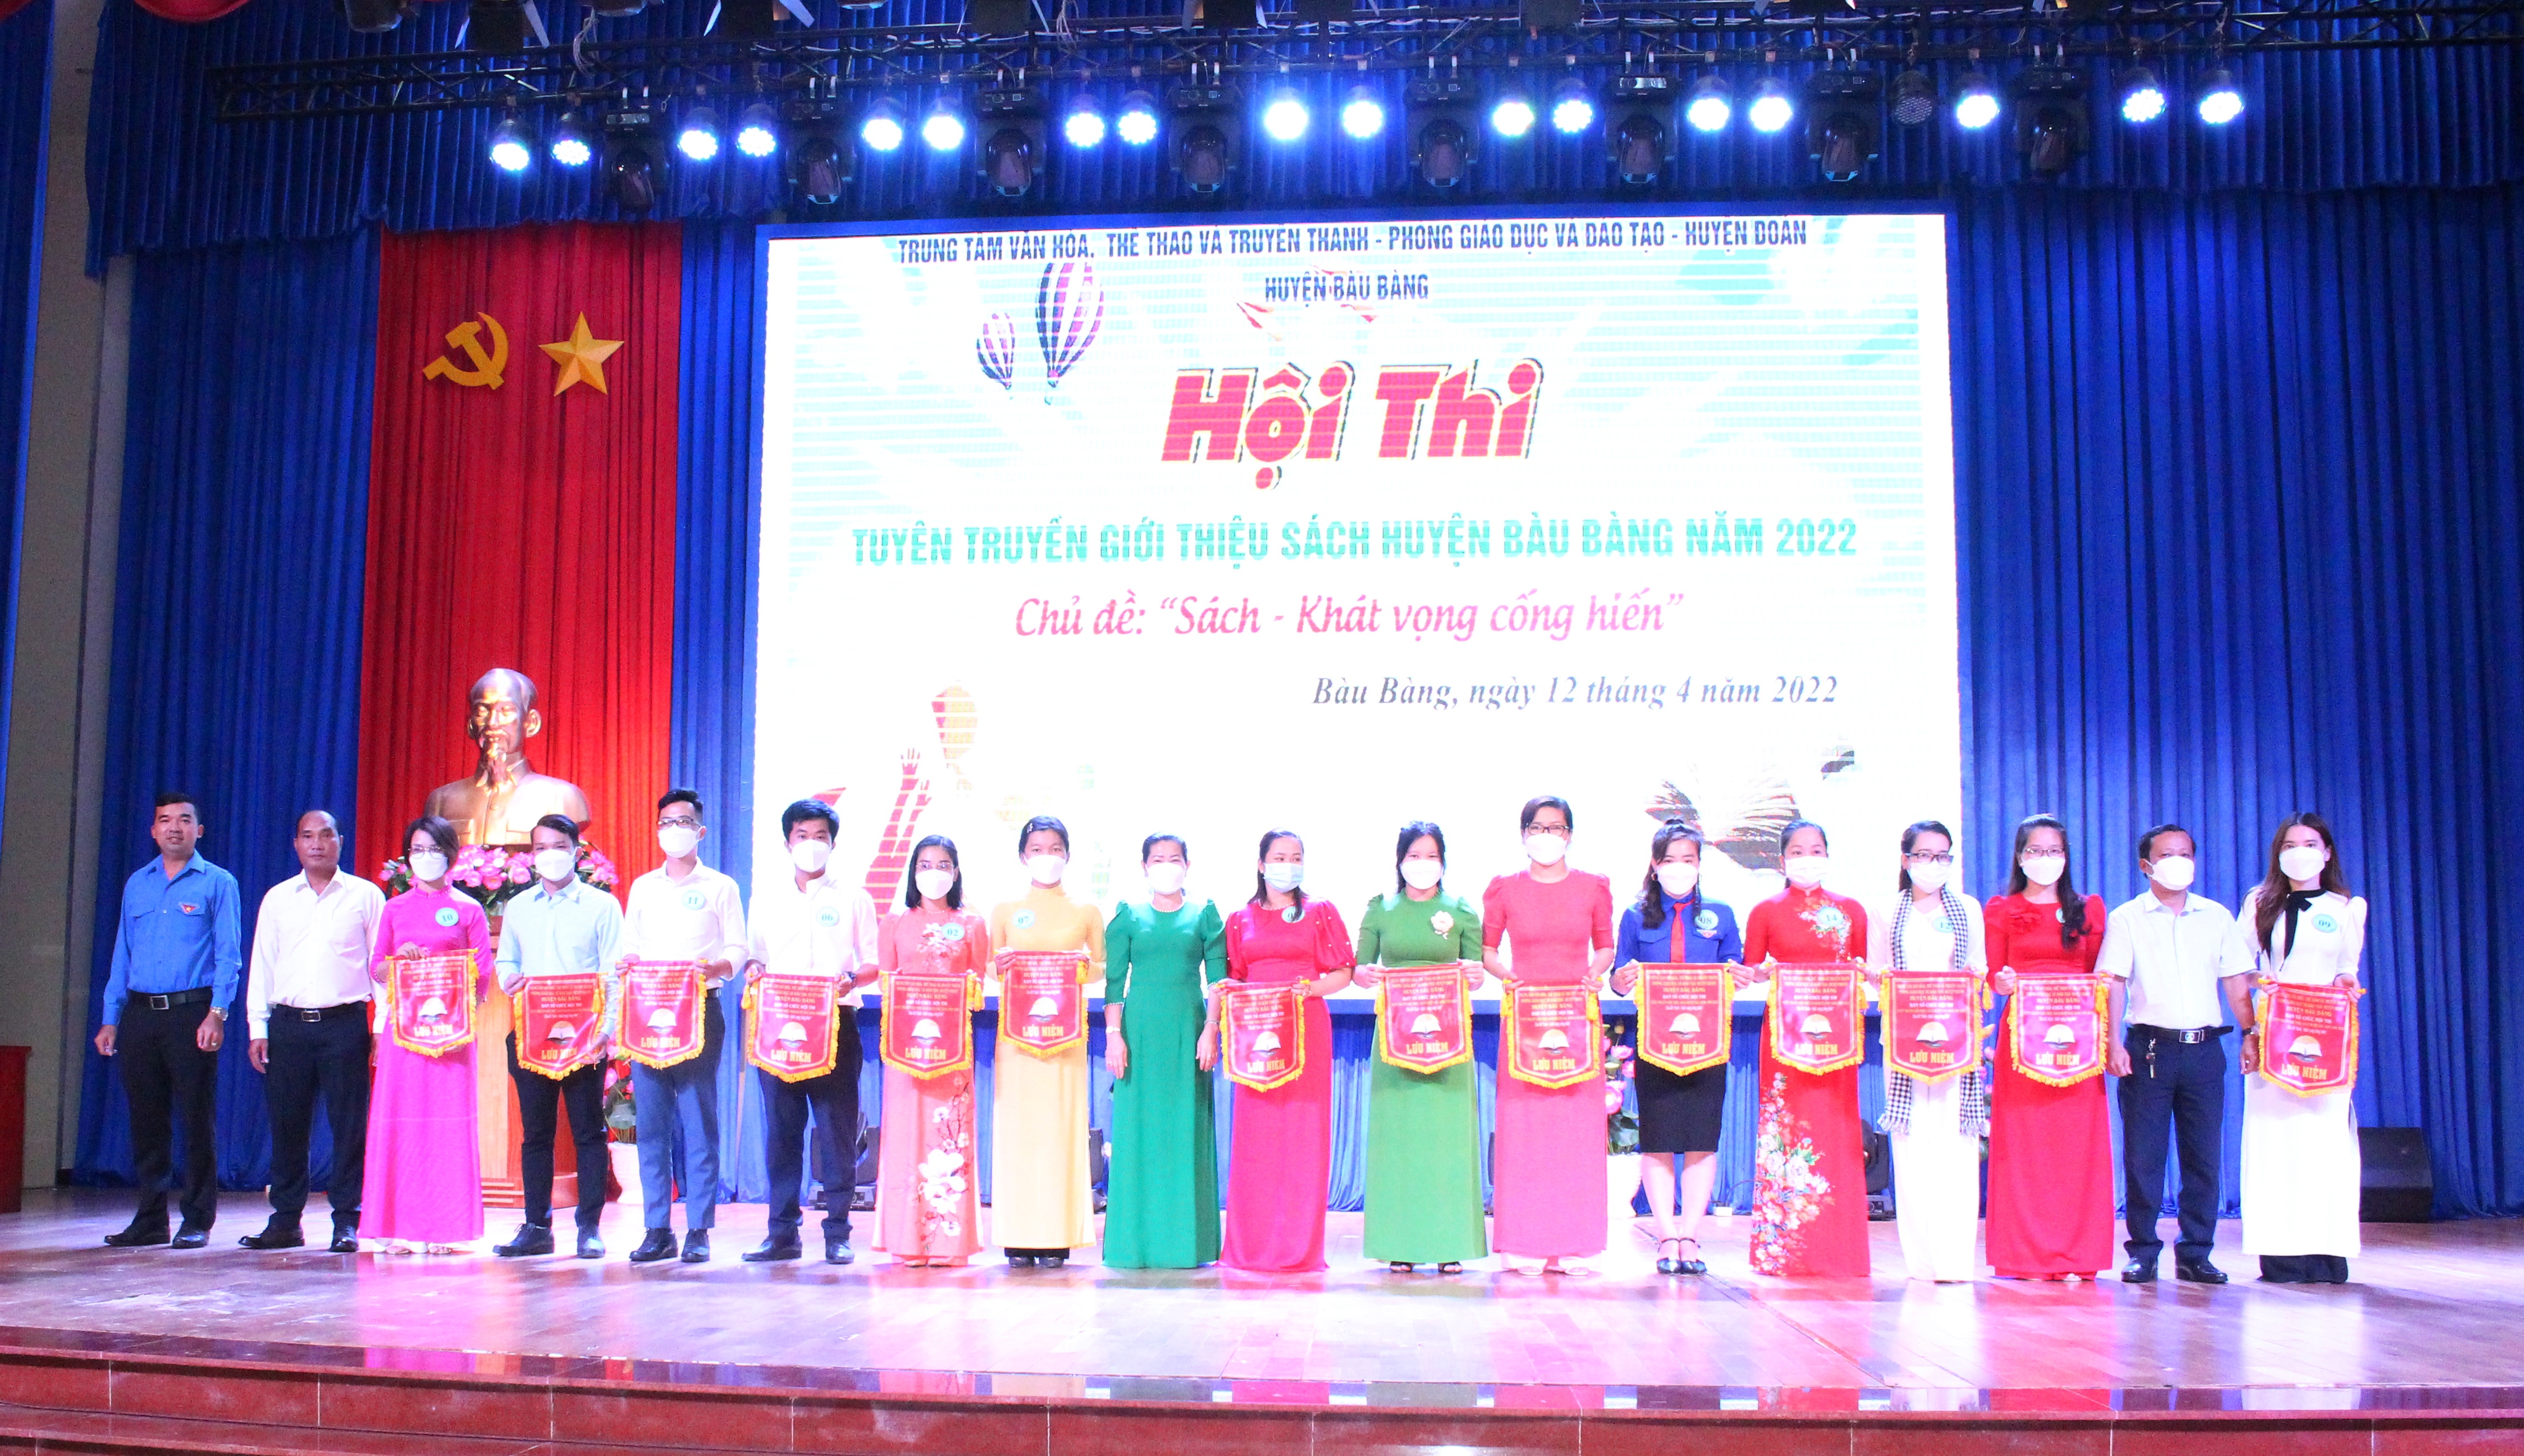 Bàu Bàng tổ chức Hội thi “Tuyên truyền giới thiệu sách” năm 2022